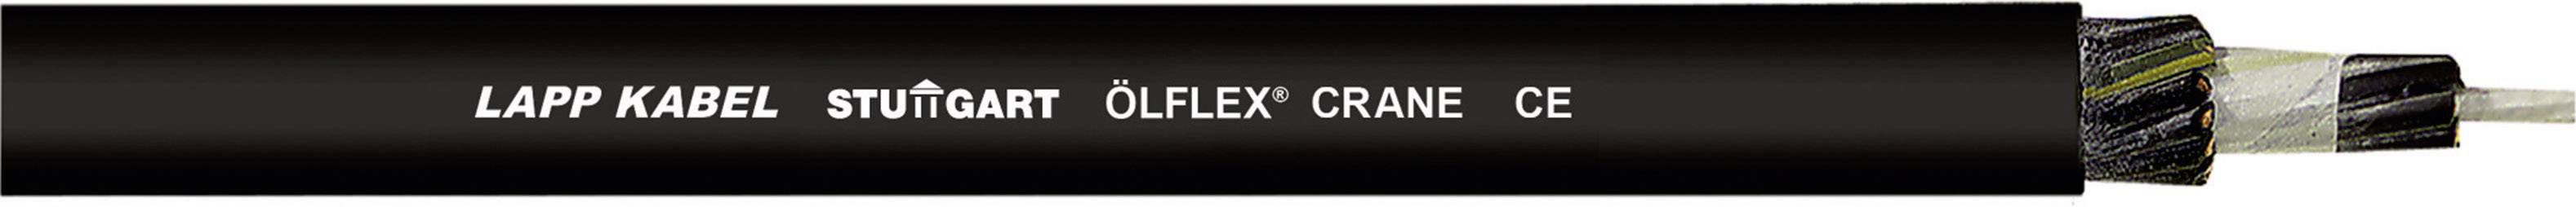 LAPP ÖLFLEX CRANE Steuerleitung 5 G 1.50 mm² Schwarz 390203-500 500 m